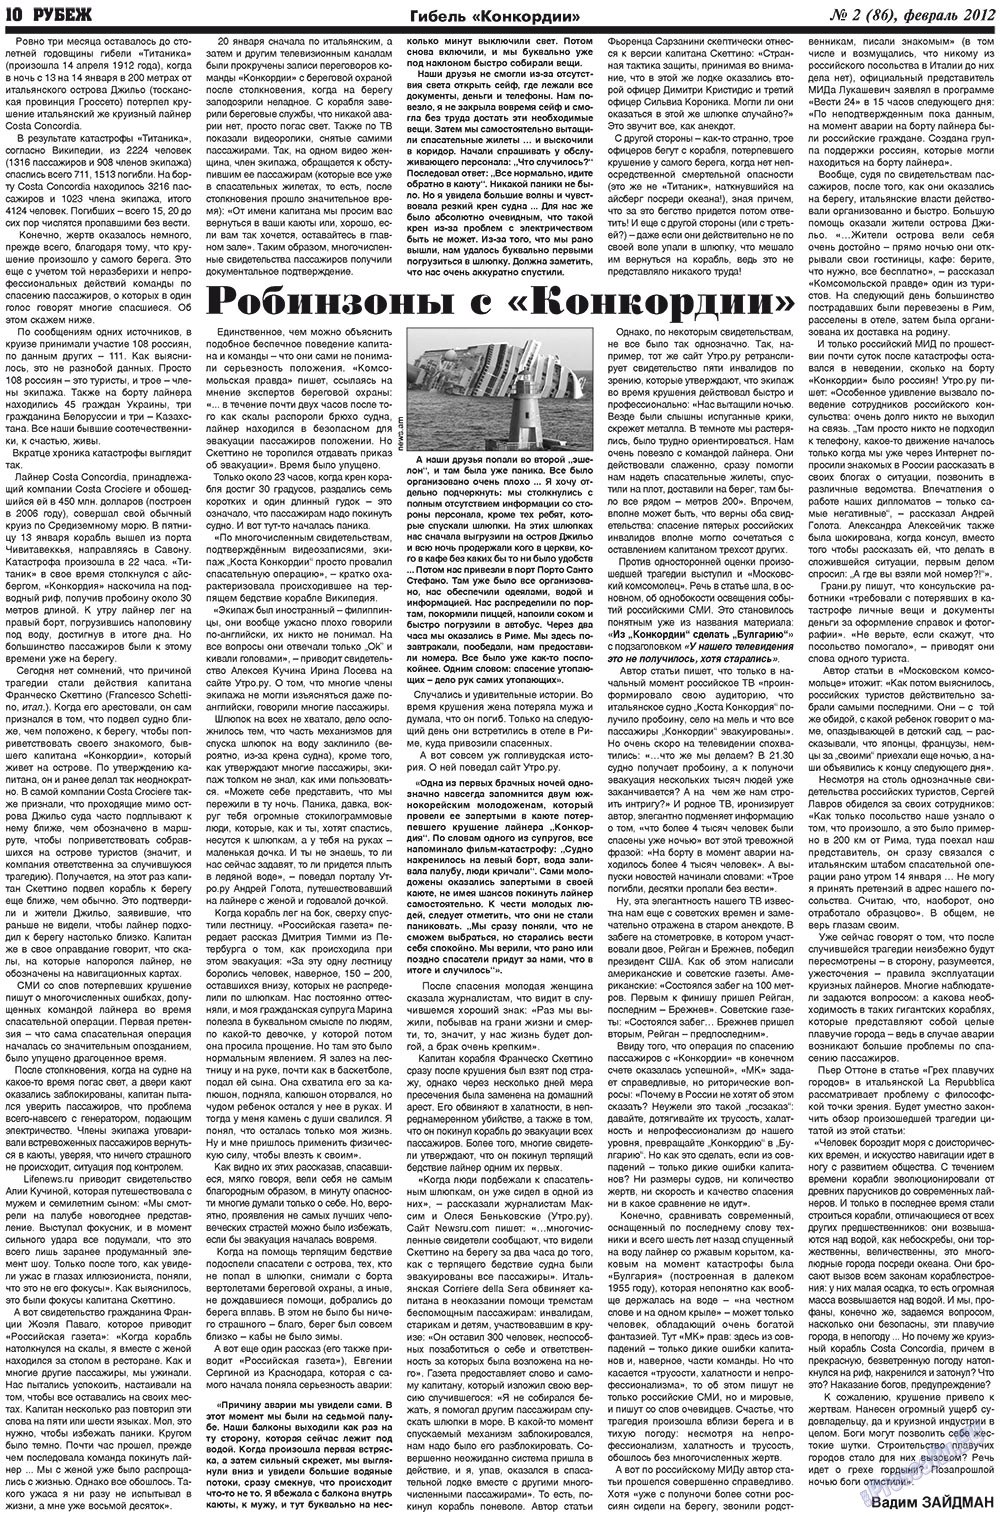 Рубеж (газета). 2012 год, номер 2, стр. 10